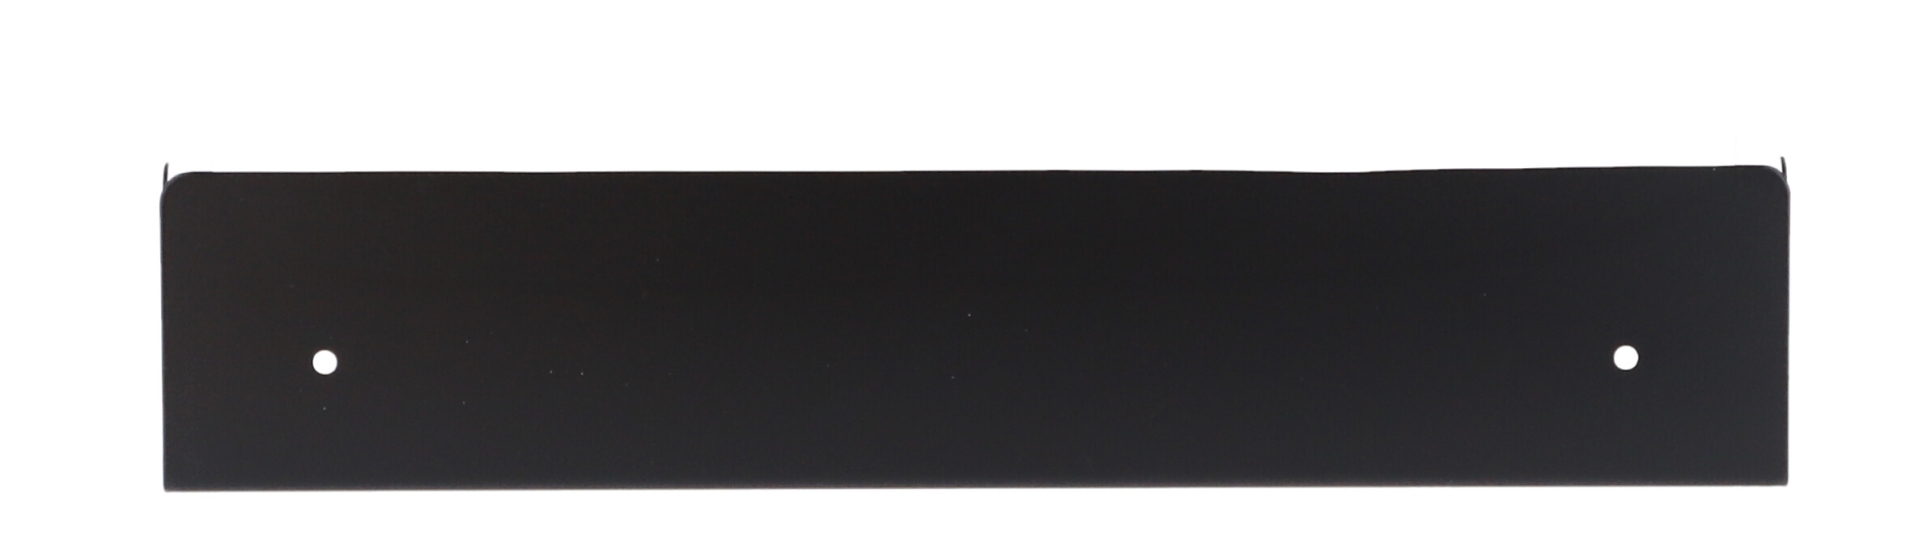 Das Wandregal Lyra wurde aus Metall gefertigt und hat einen schwarzen Farbton. Die Breite beträgt 50 cm. Das Design ist schlicht aber auch modern. Das Regal ist ein Produkt der Marke Jan Kurtz.